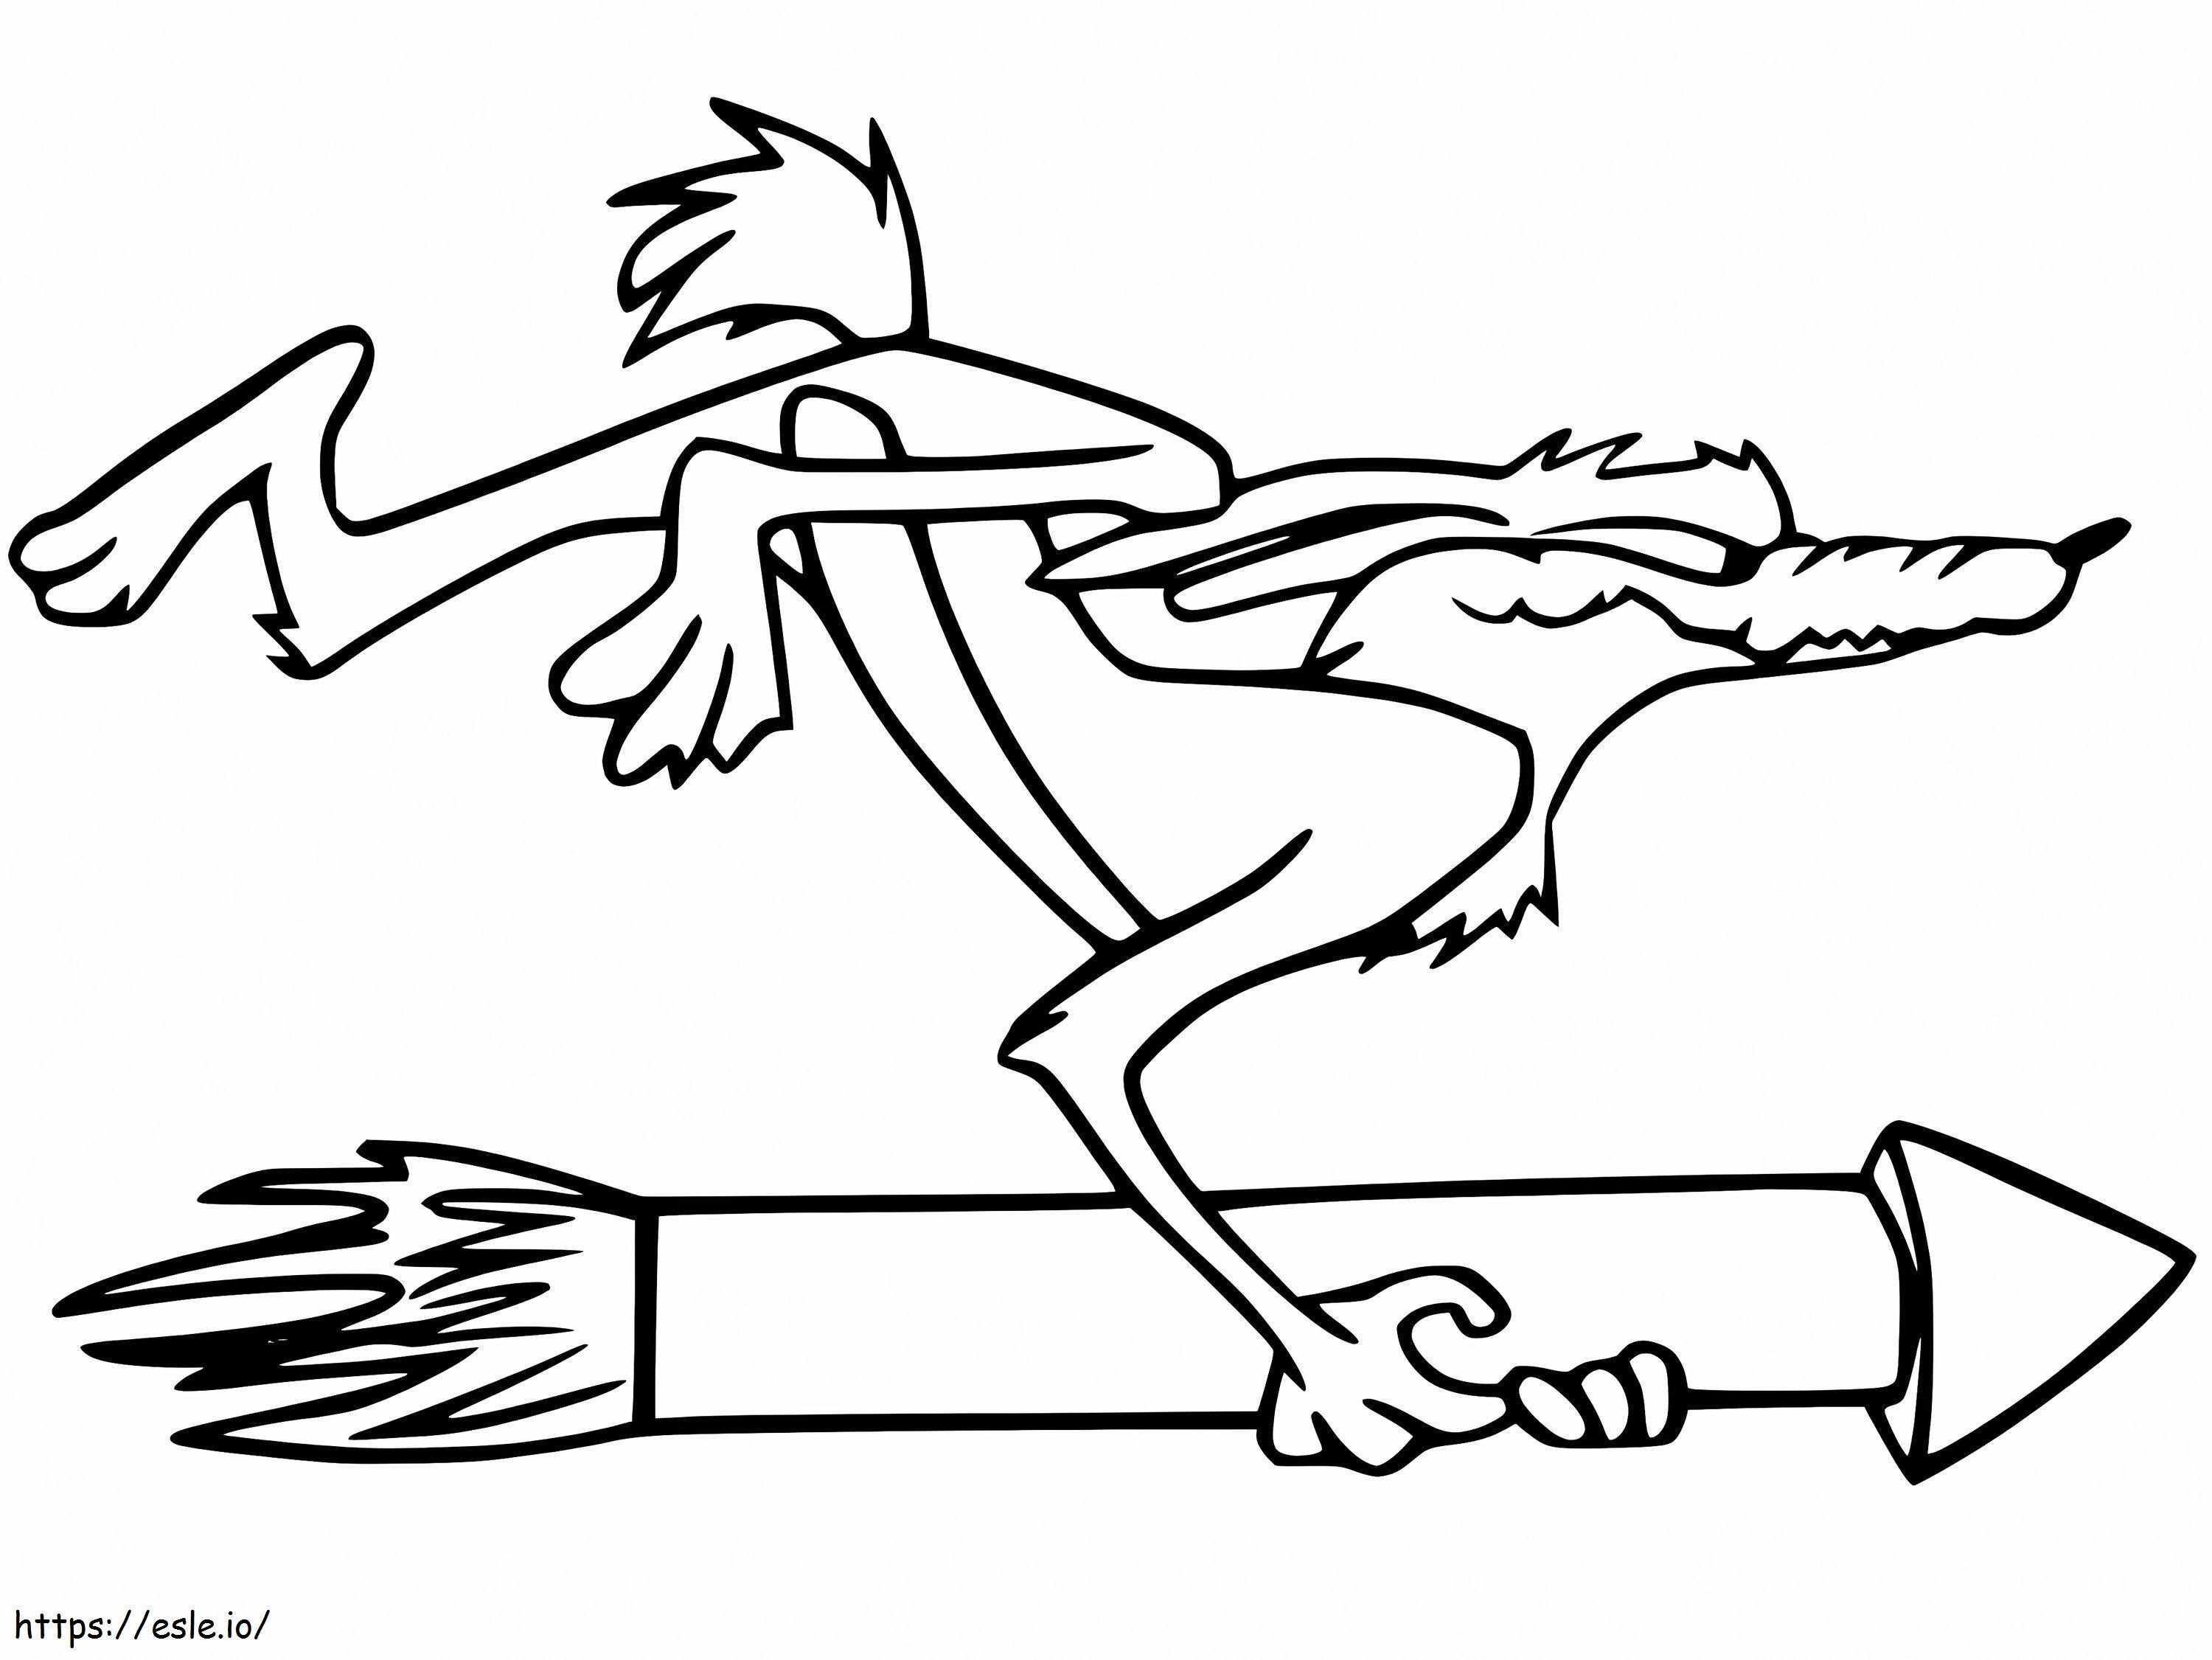 Wile E Coyote mit Rakete ausmalbilder